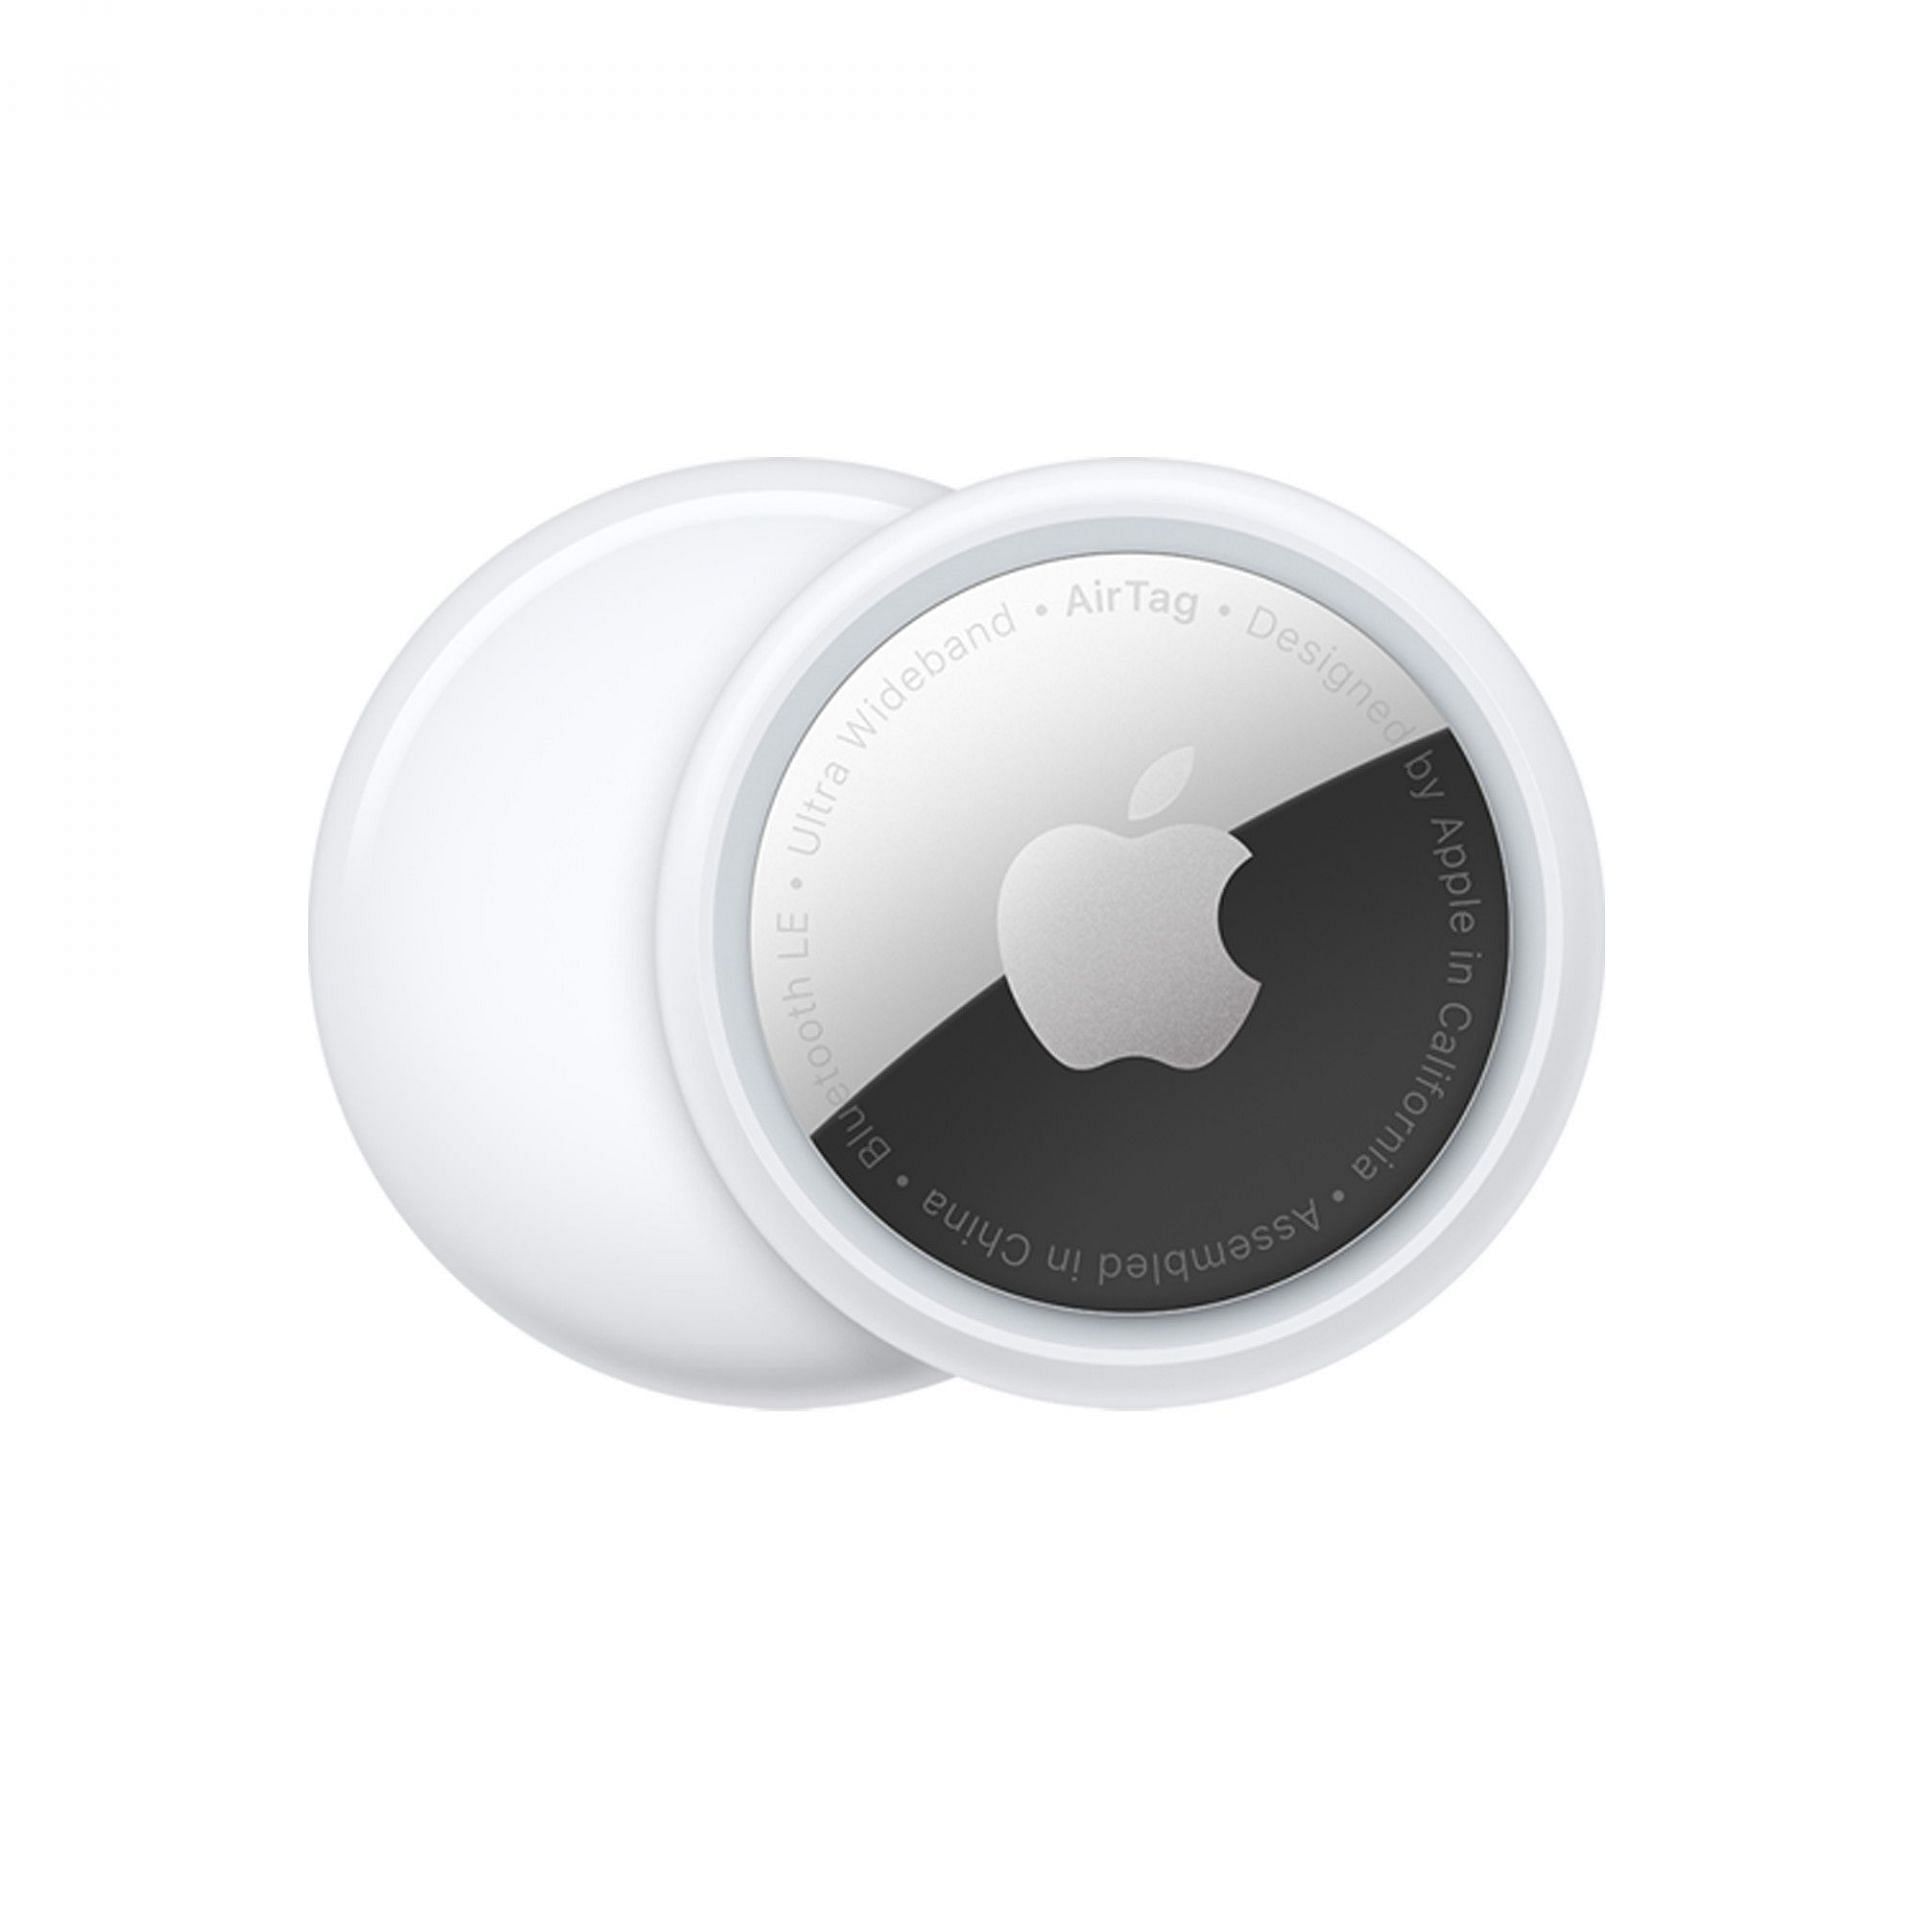 Apple AirTag Pack of 2 (Image via Apple)